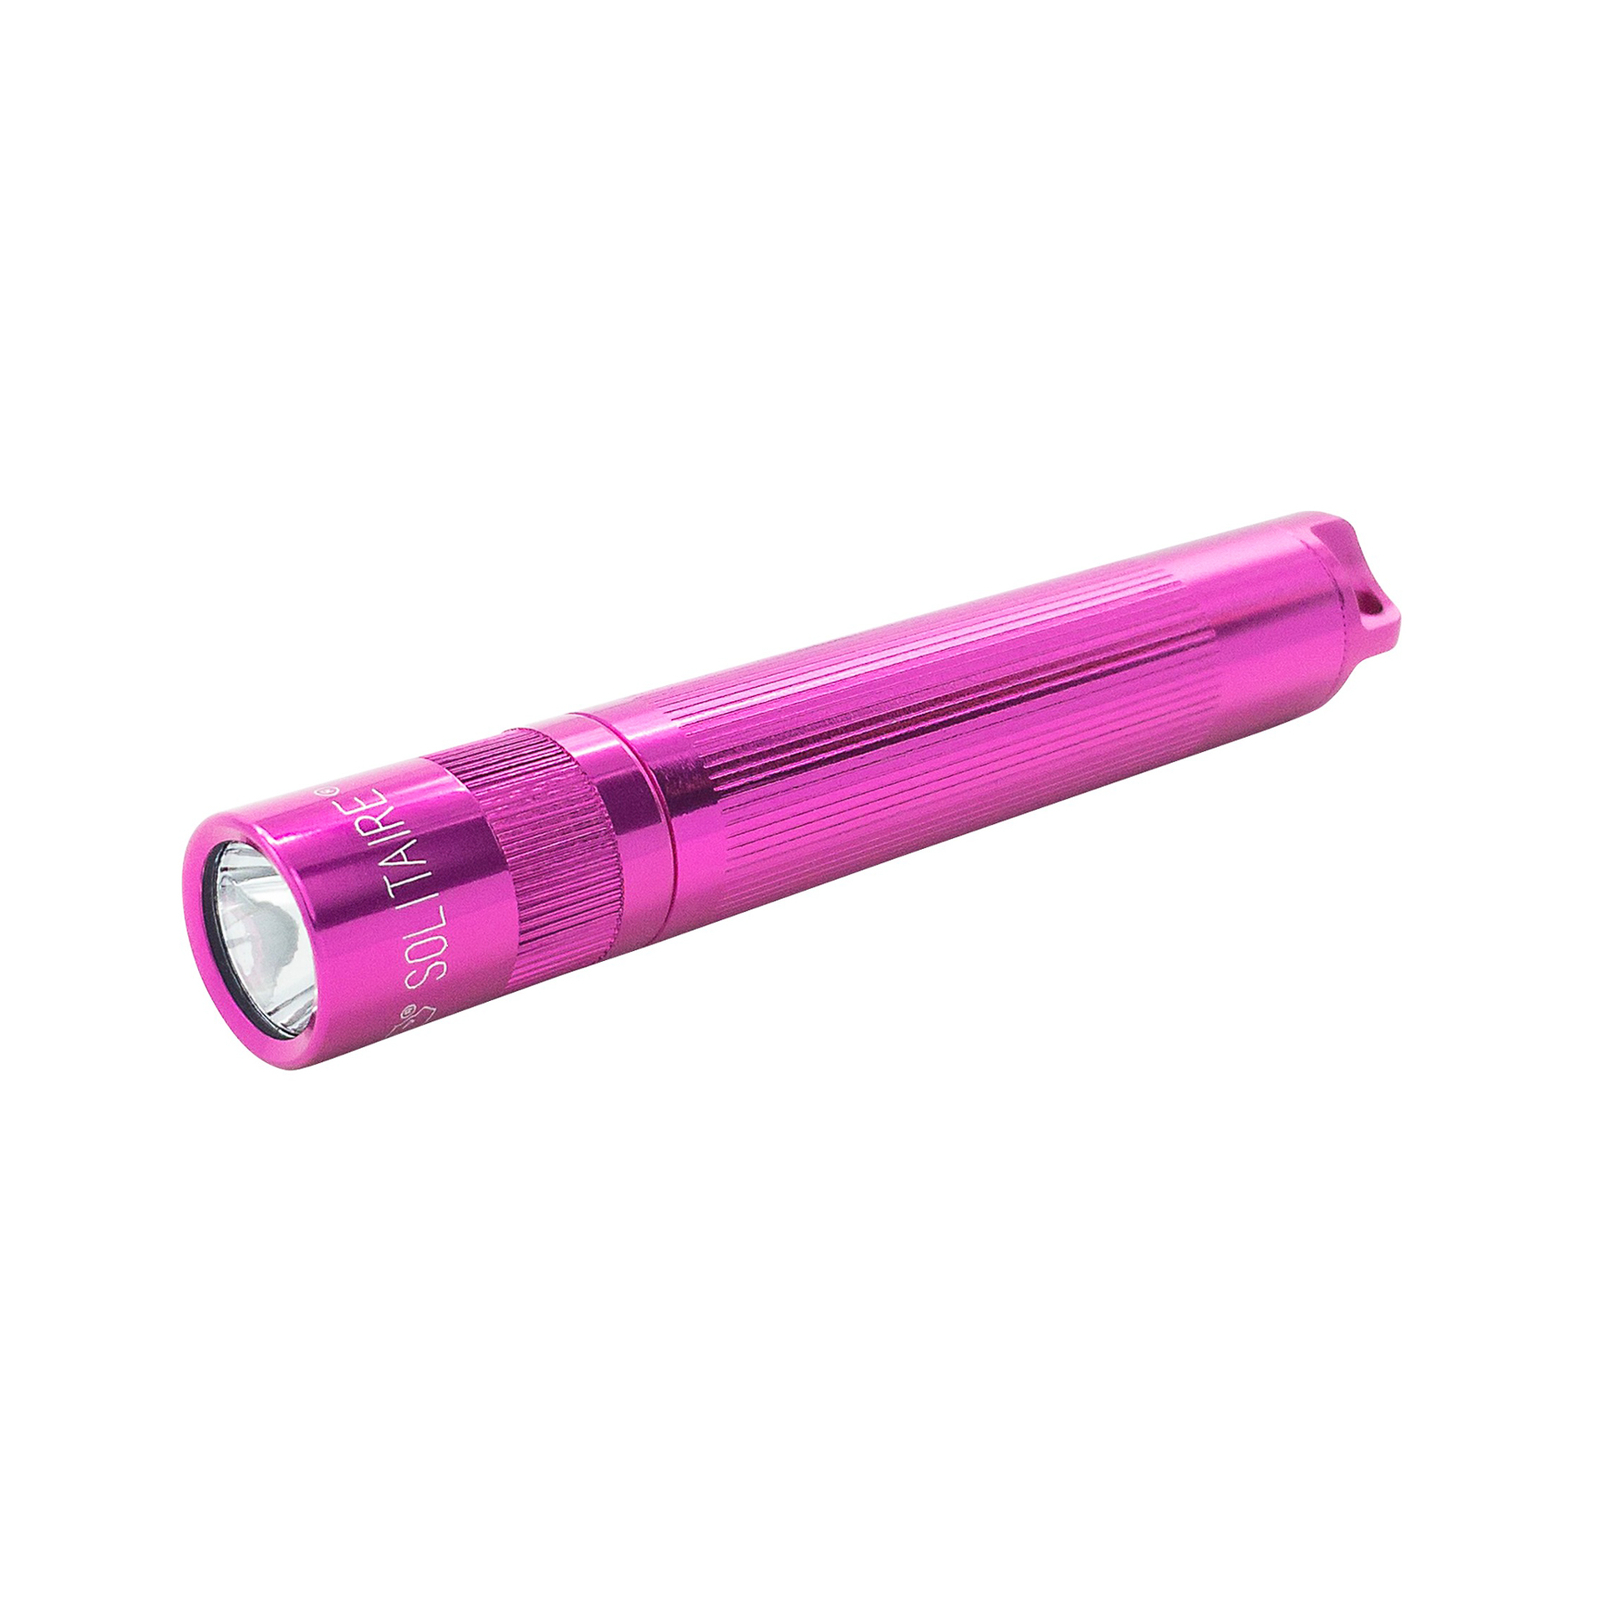 Maglite Xenon taskulamppu Solitaire 1-Cell AAA, laatikko, vaaleanpunainen